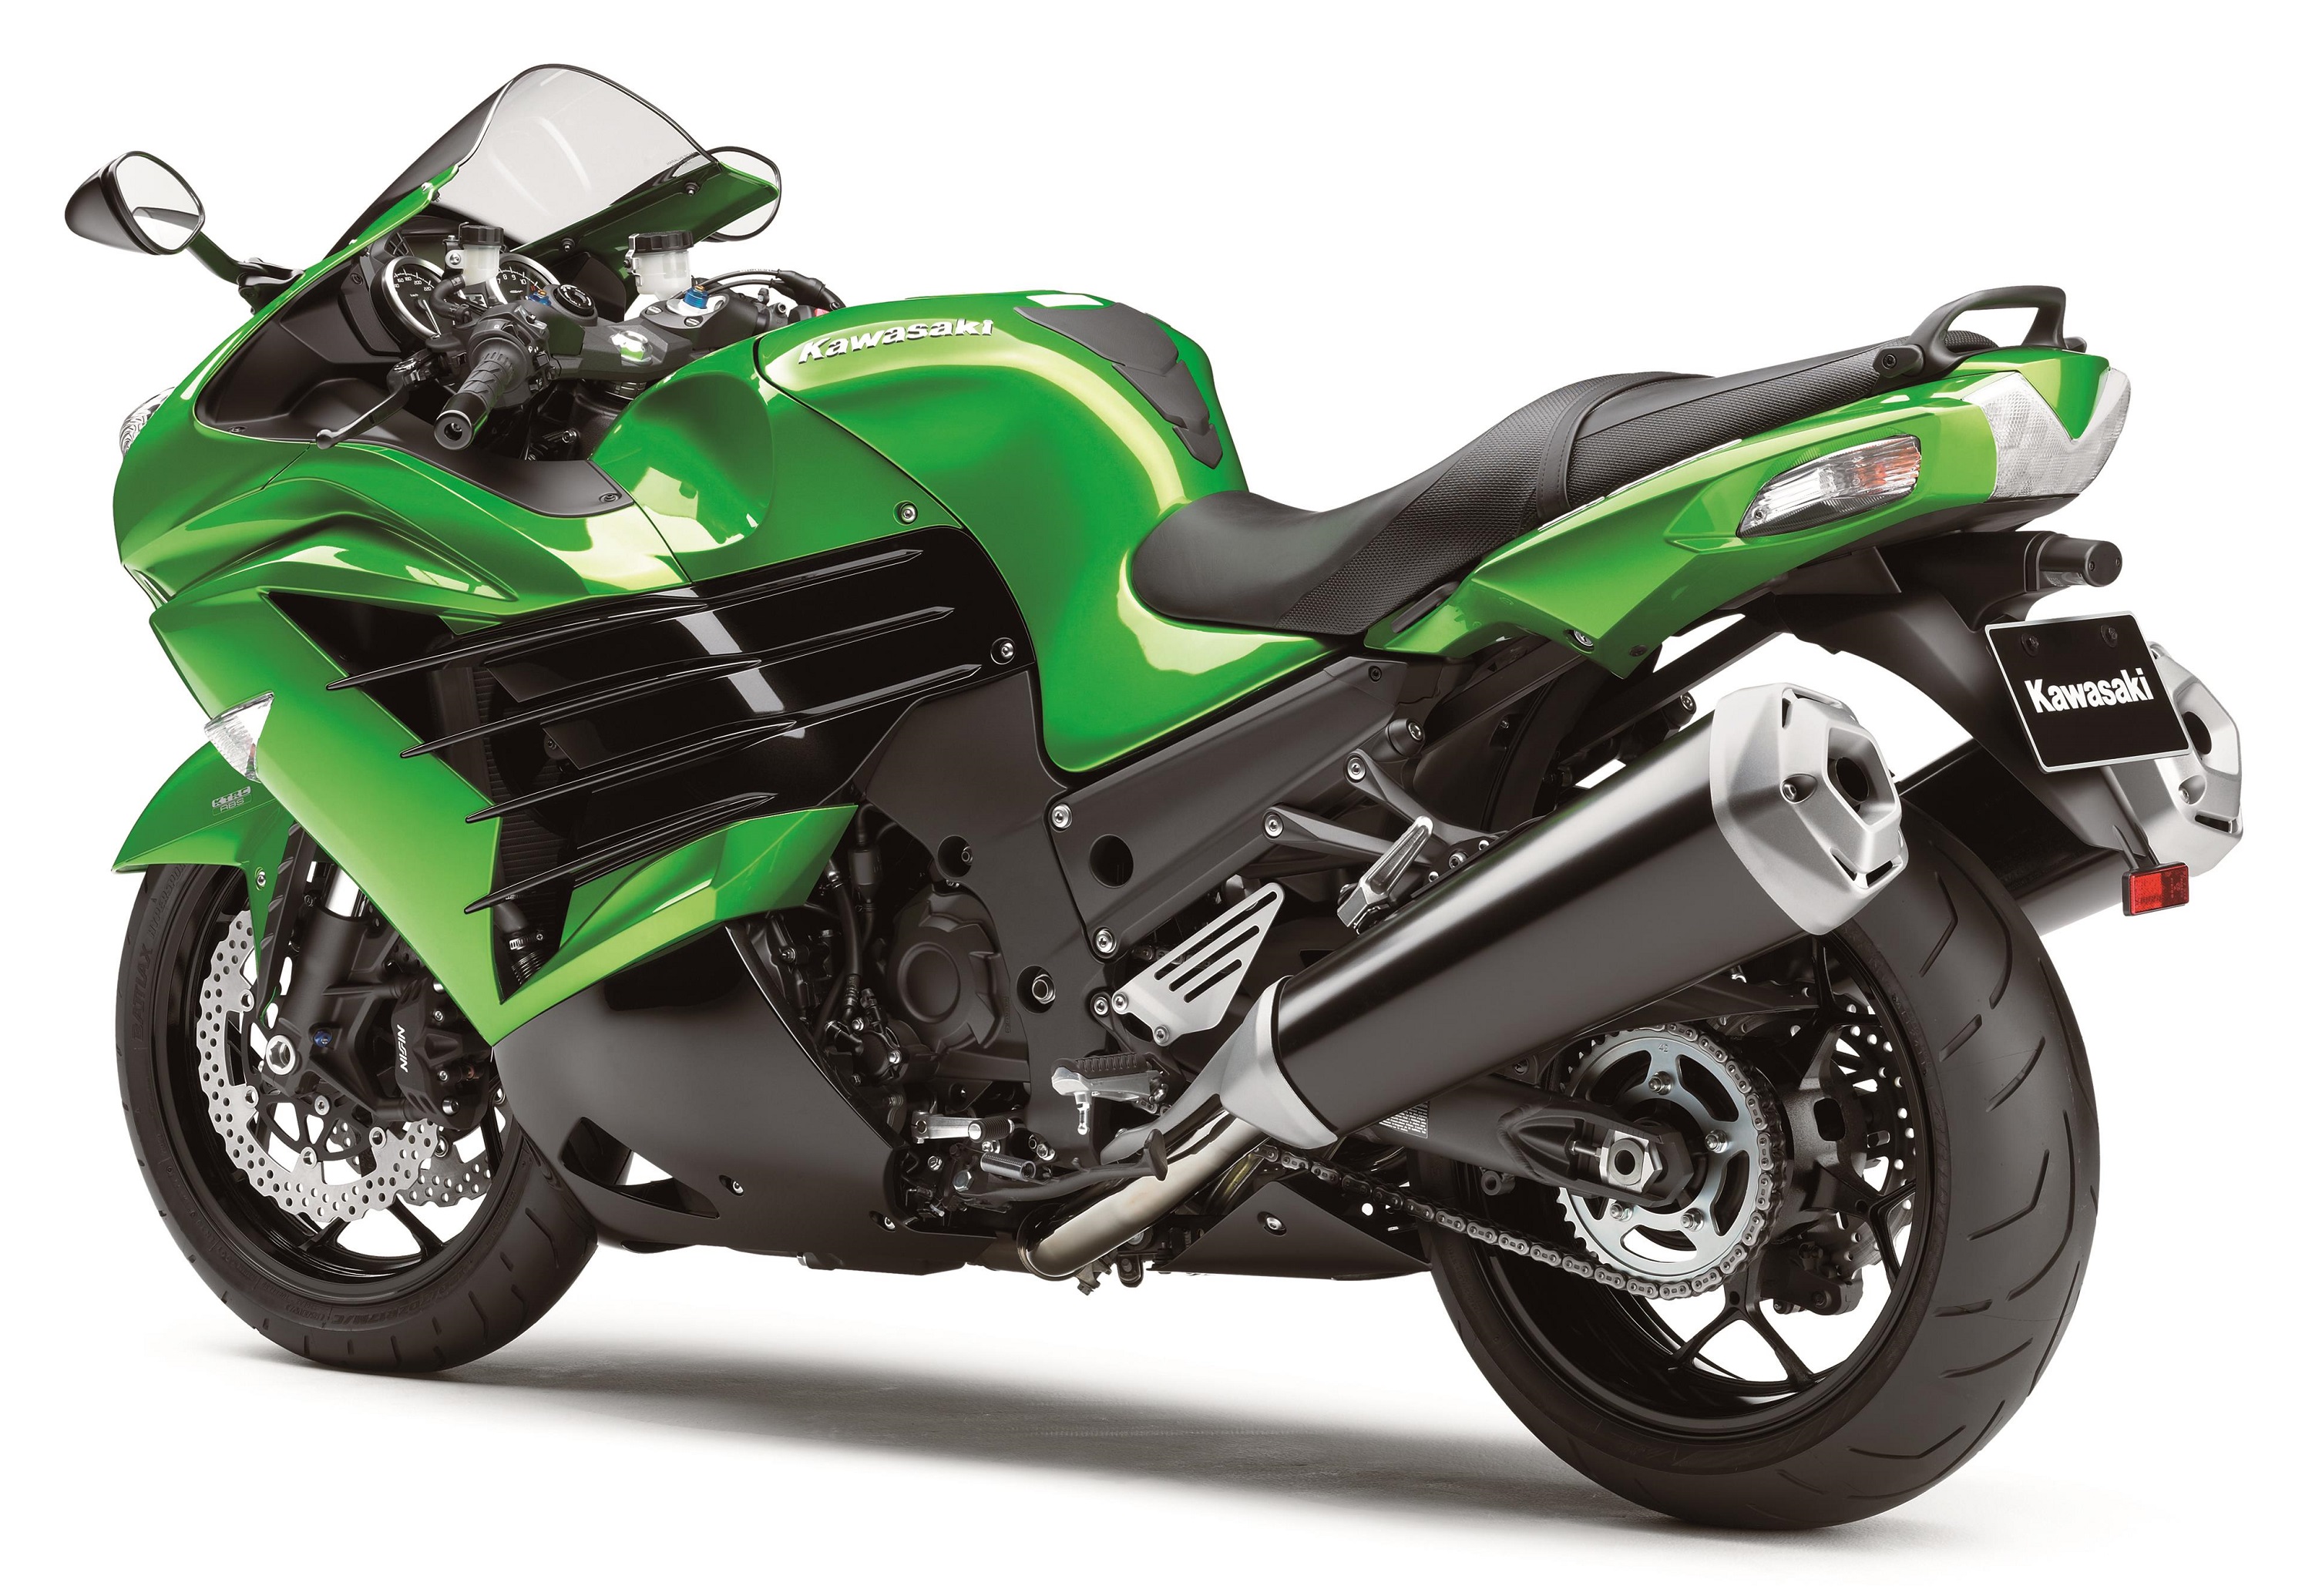 Kawasaki ZZR1400 Motorbikes For Sale - The Market